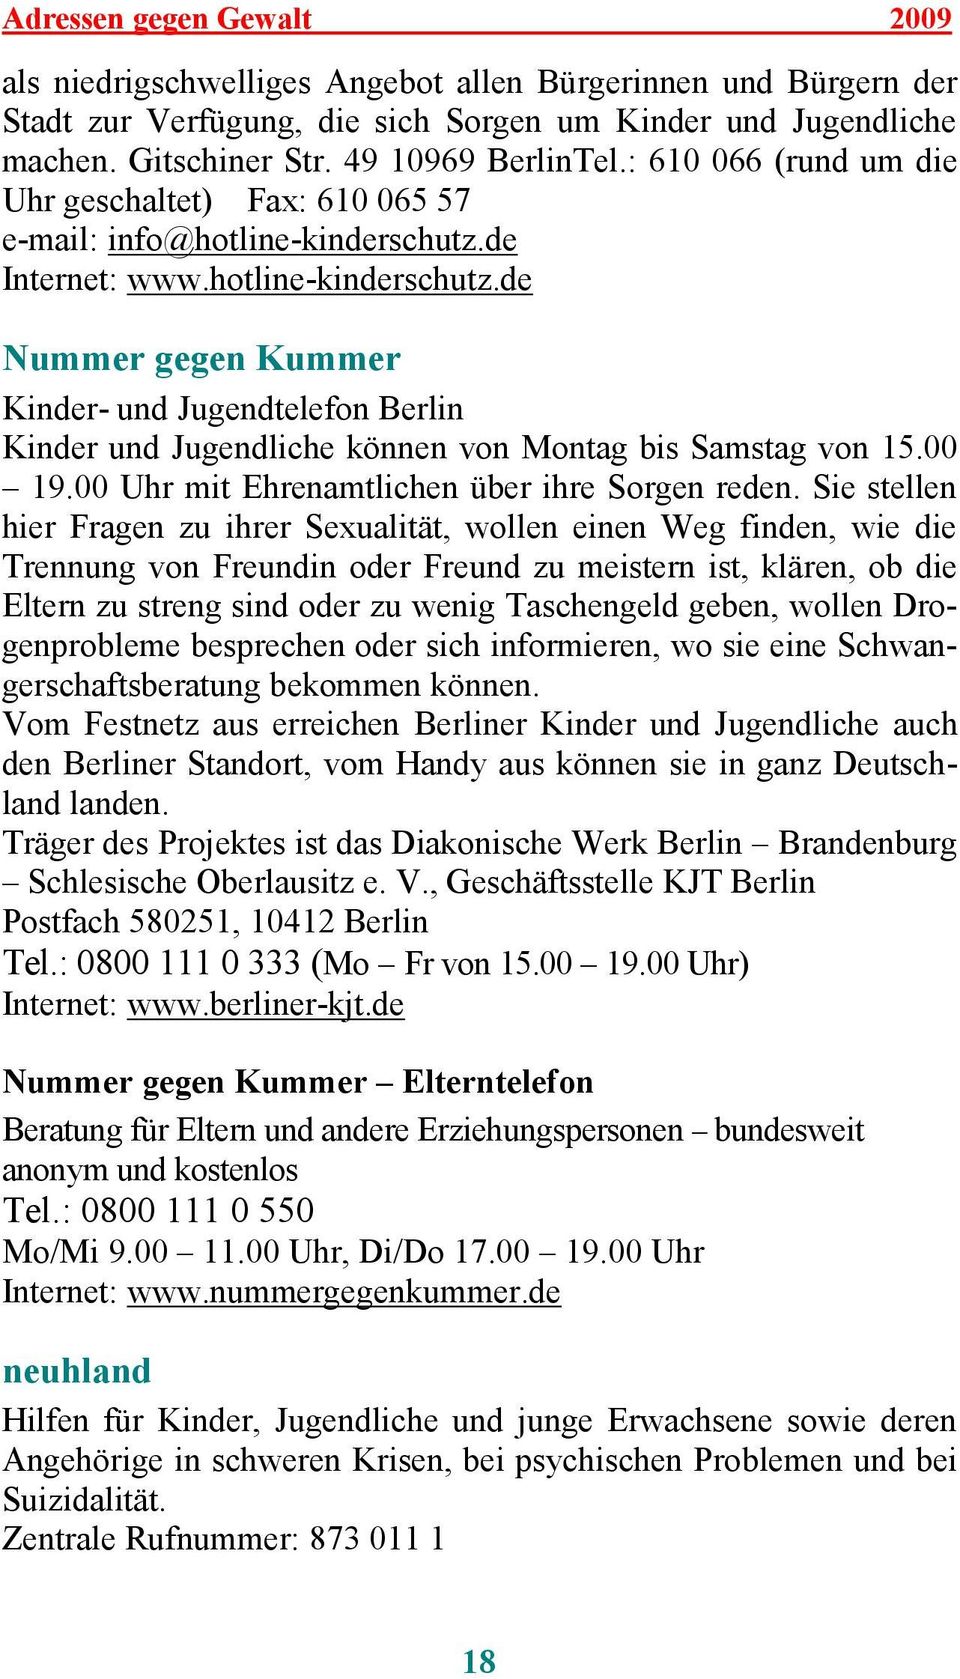 de Internet: www.hotline-kinderschutz.de Nummer gegen Kummer Kinder- und Jugendtelefon Berlin Kinder und Jugendliche können von Montag bis Samstag von 15.00 19.